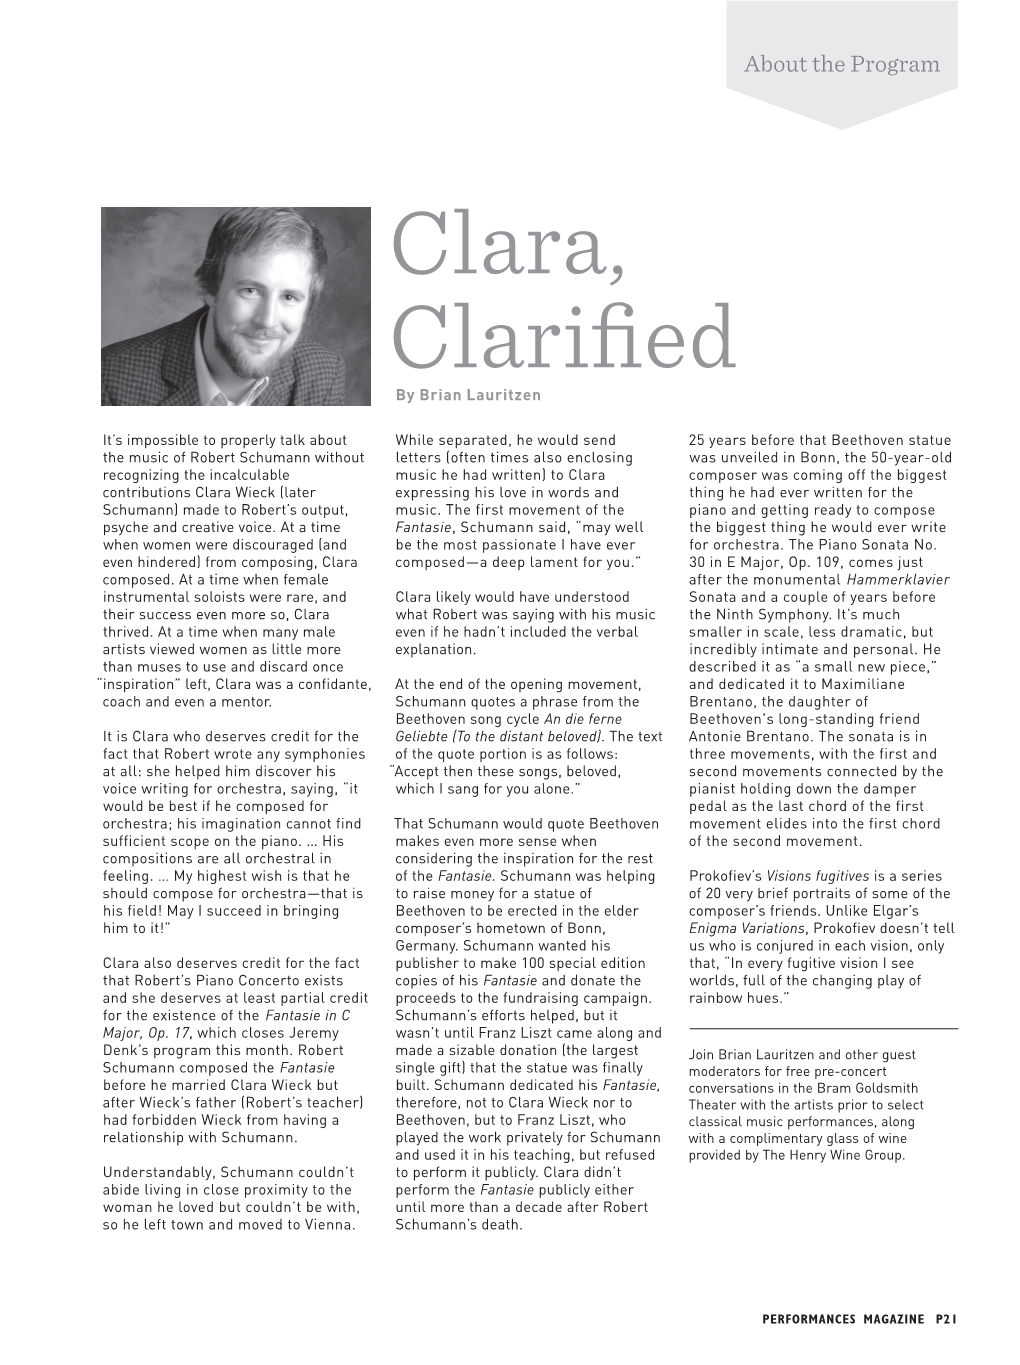 Clara, Clarified by Brian Lauritzen